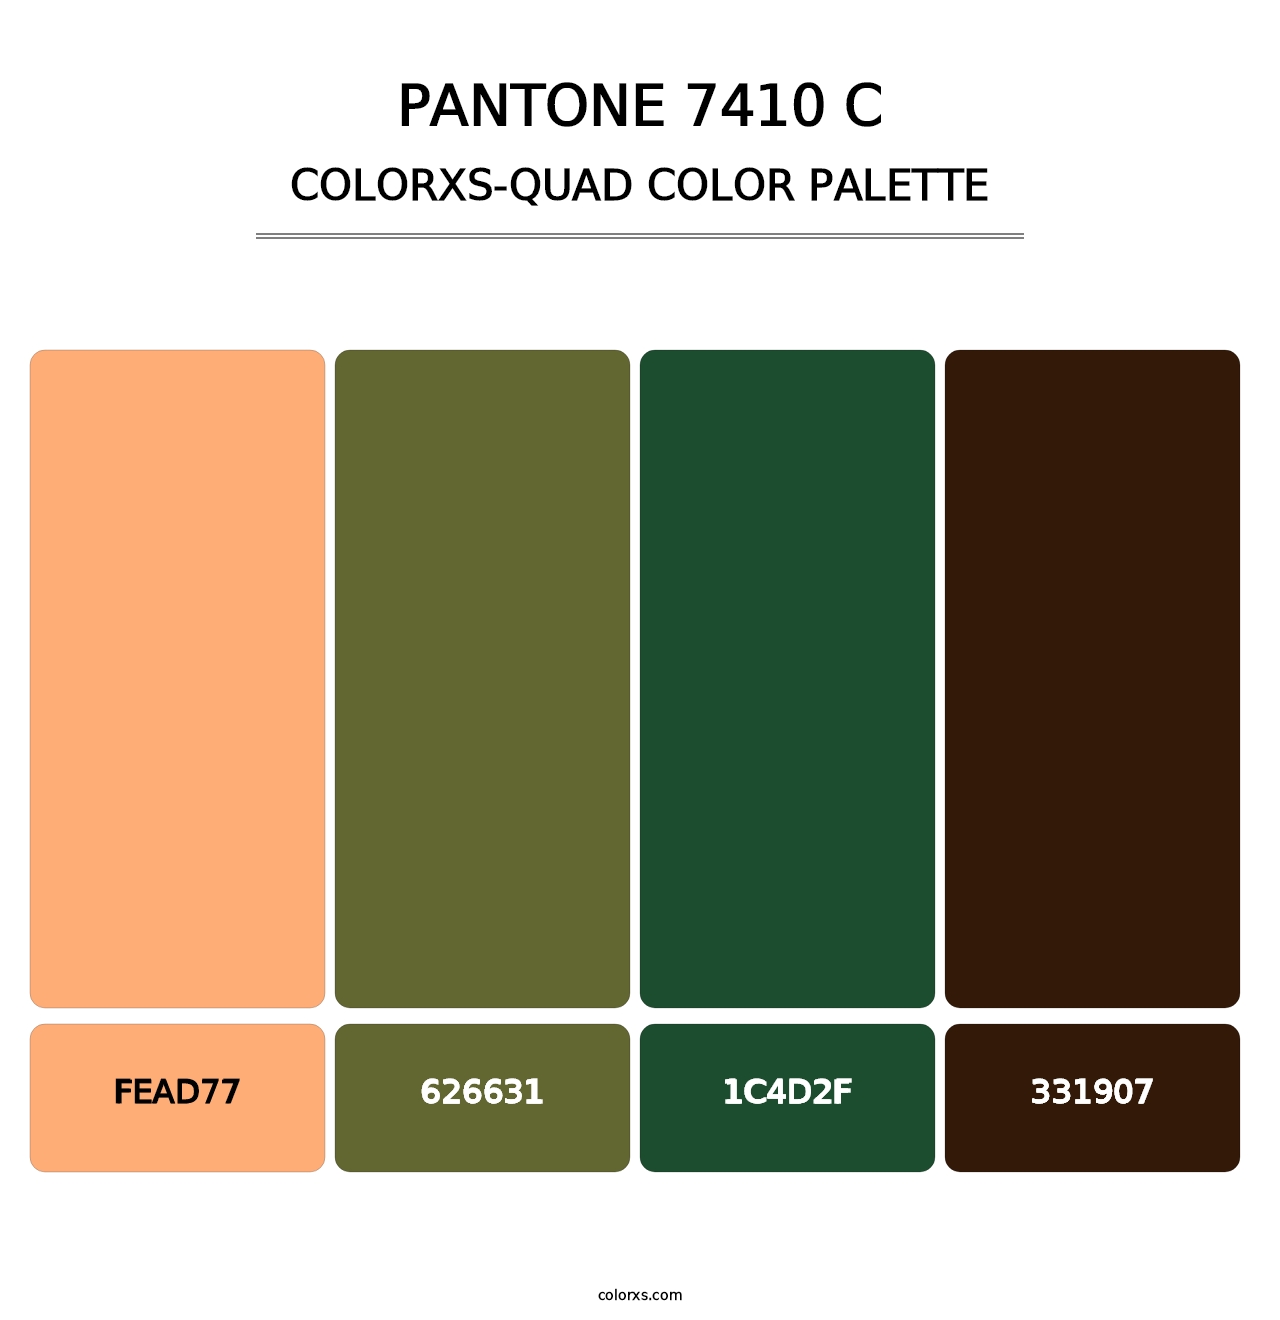 PANTONE 7410 C - Colorxs Quad Palette